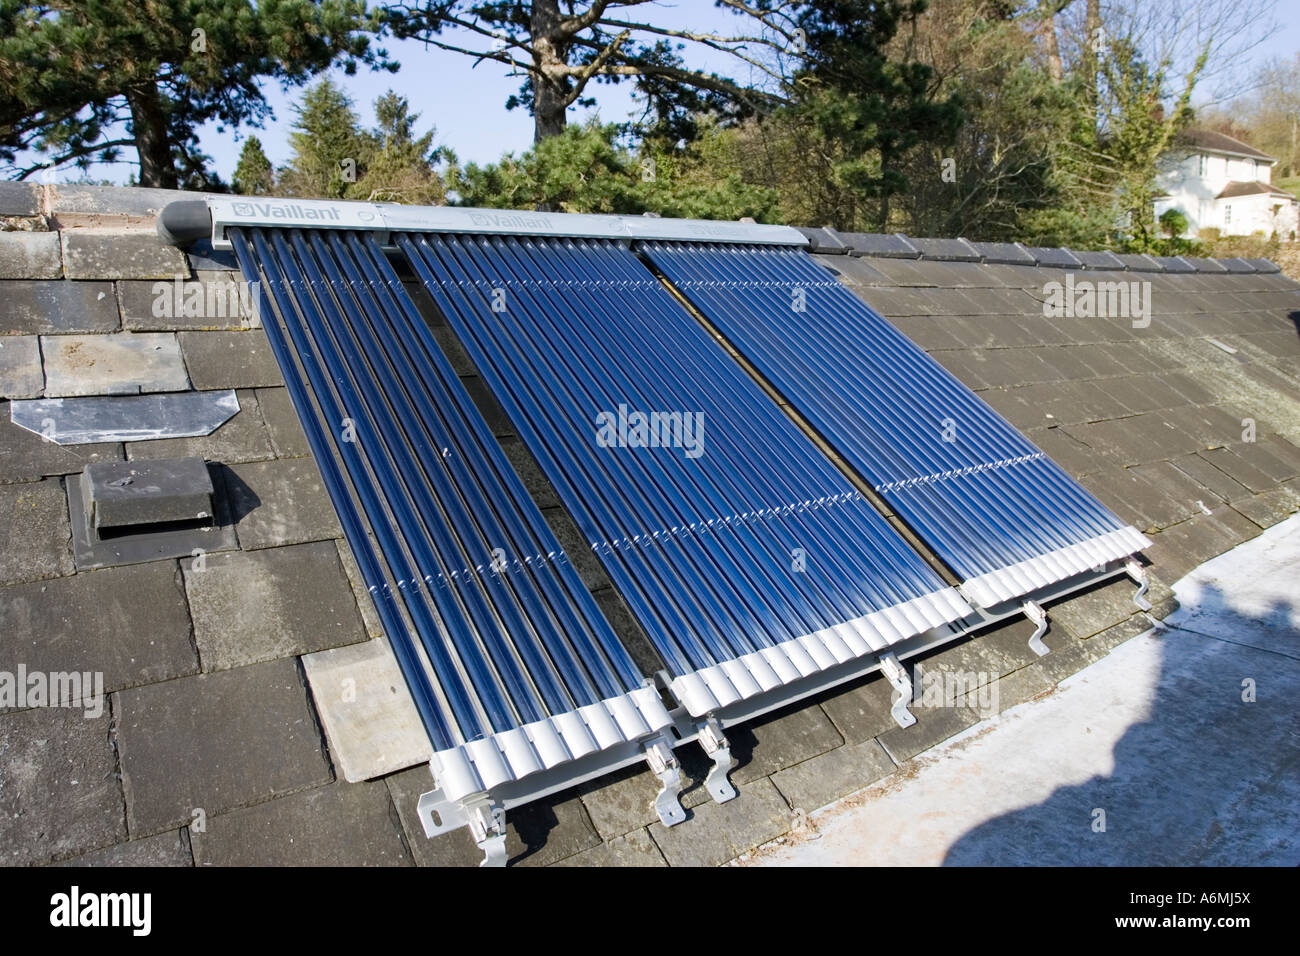 Bank des Daches montiert Vaillant Aurotherm evakuiert solar  Röhrenkollektoren installiert auf Schieferdach Cotswolds UK Stockfotografie  - Alamy